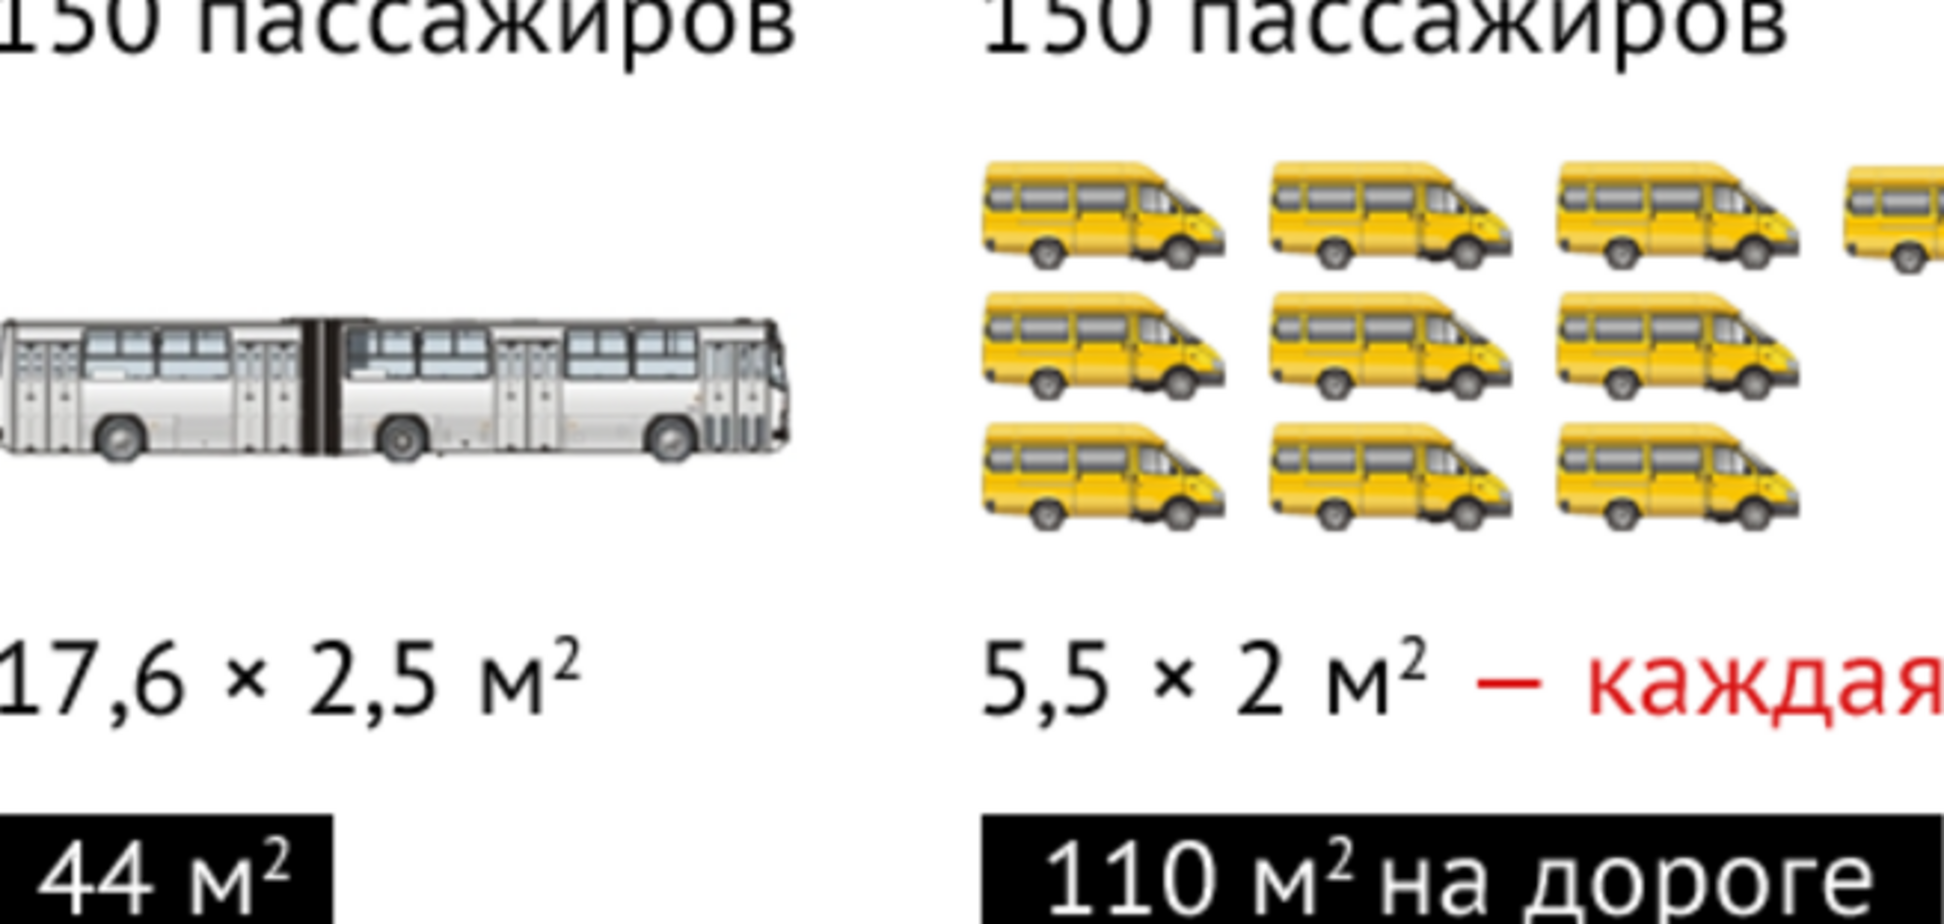 Дніпропетровськ: тарифи на проїзд. Де логіка??? 